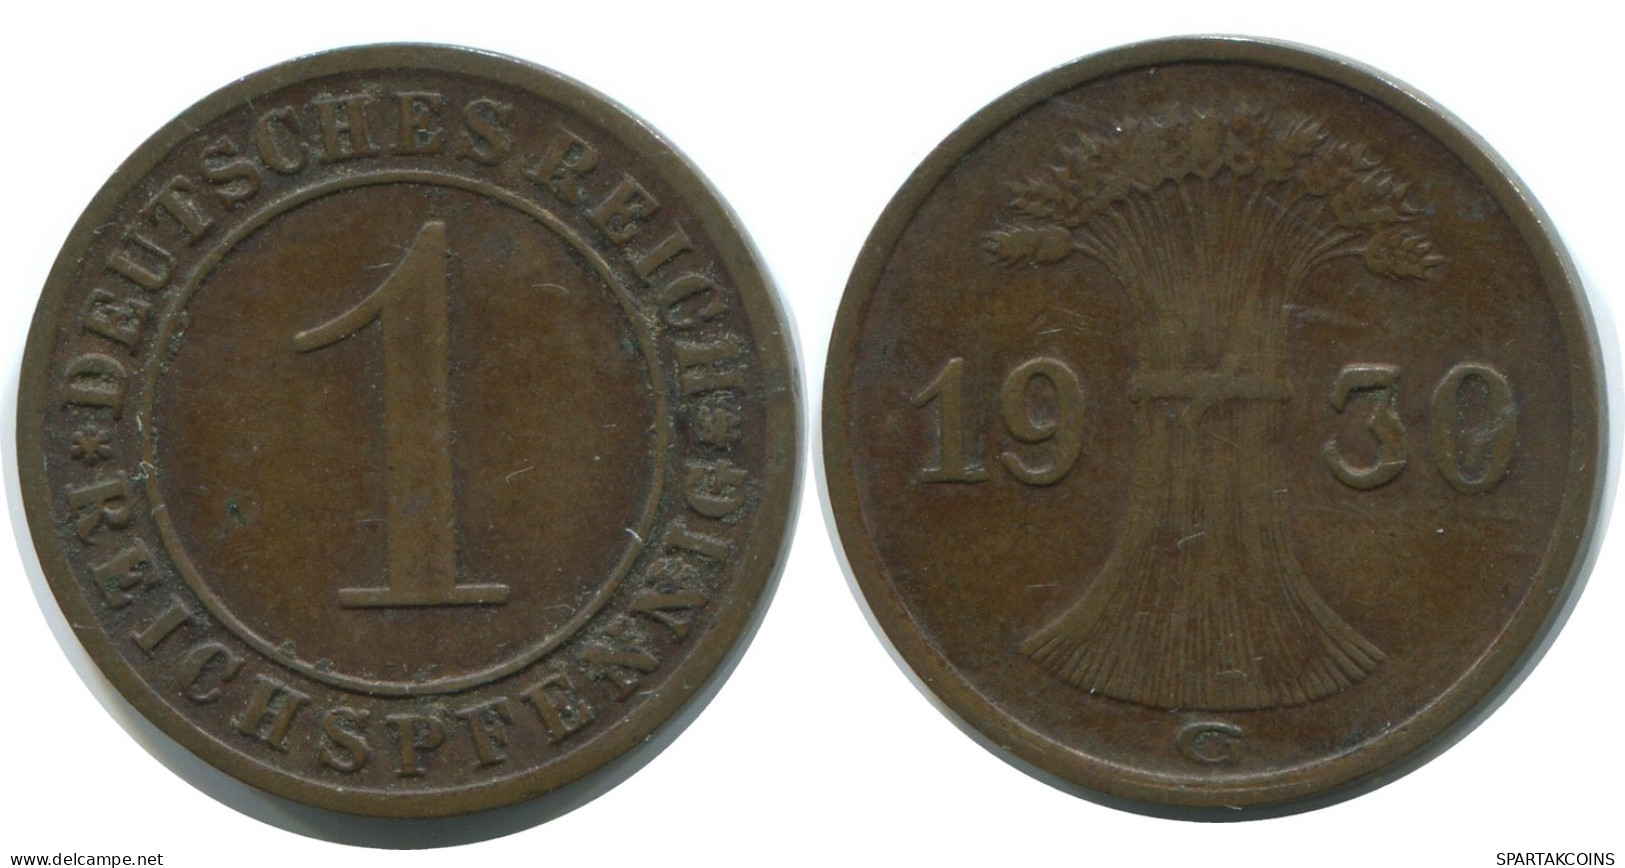 1 REICHSPFENNIG 1930 G GERMANY Coin #AE210.U - 1 Rentenpfennig & 1 Reichspfennig